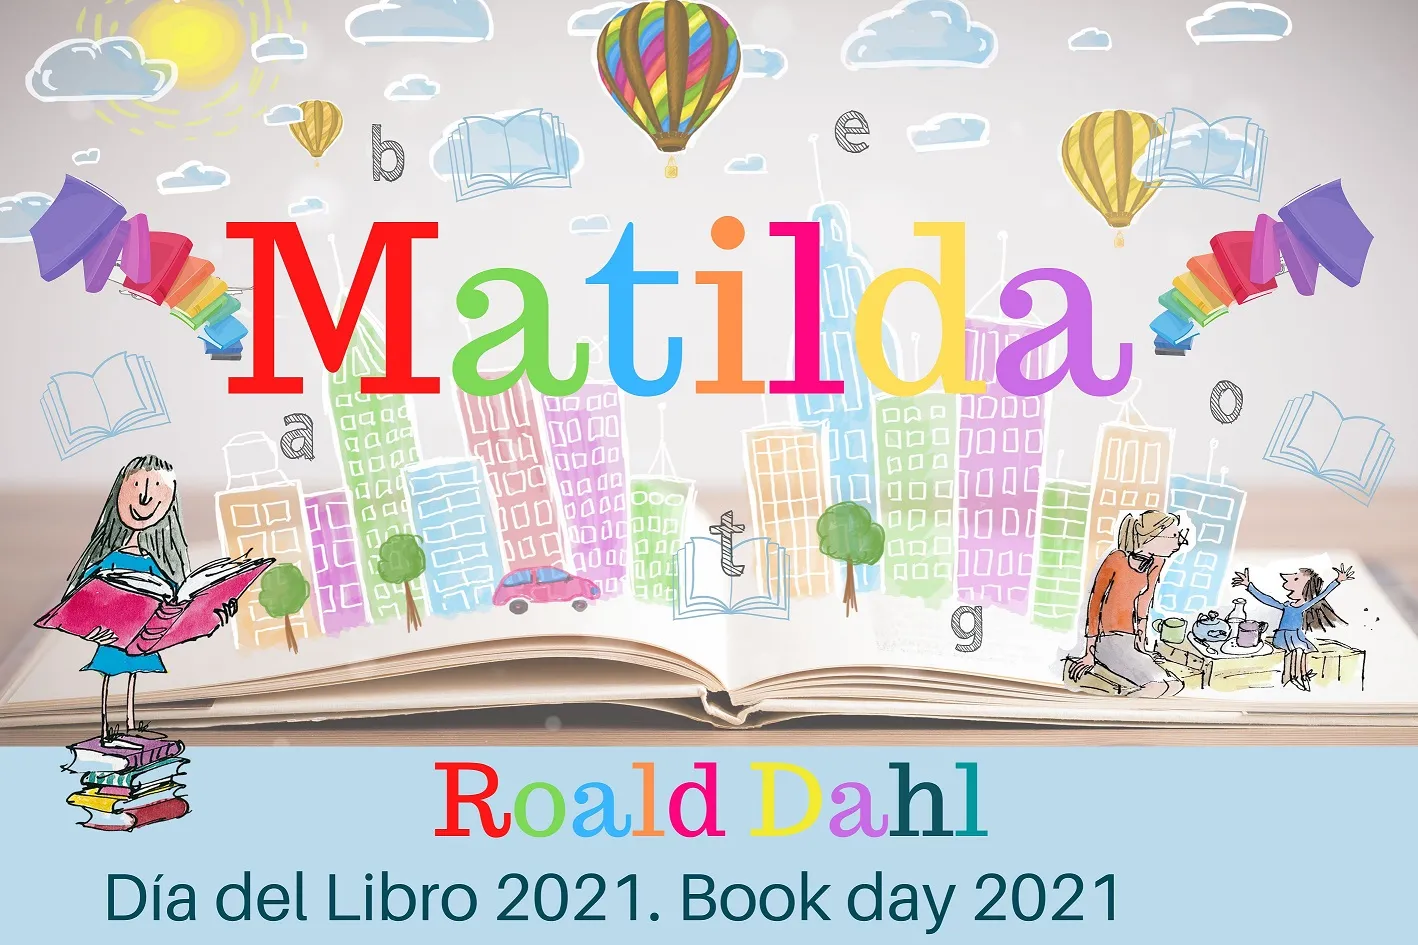 Proyecto Matilda. Roald Dahl. Día del Libro